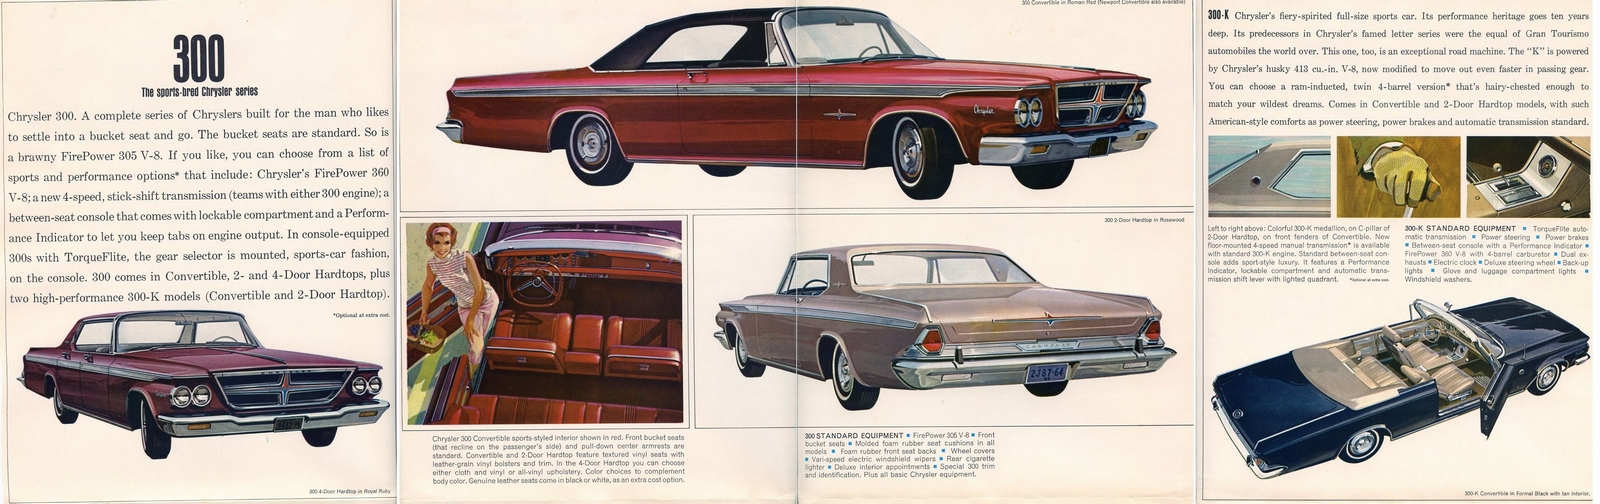 n_1964 Chrysler Full Line Foldout-04.jpg